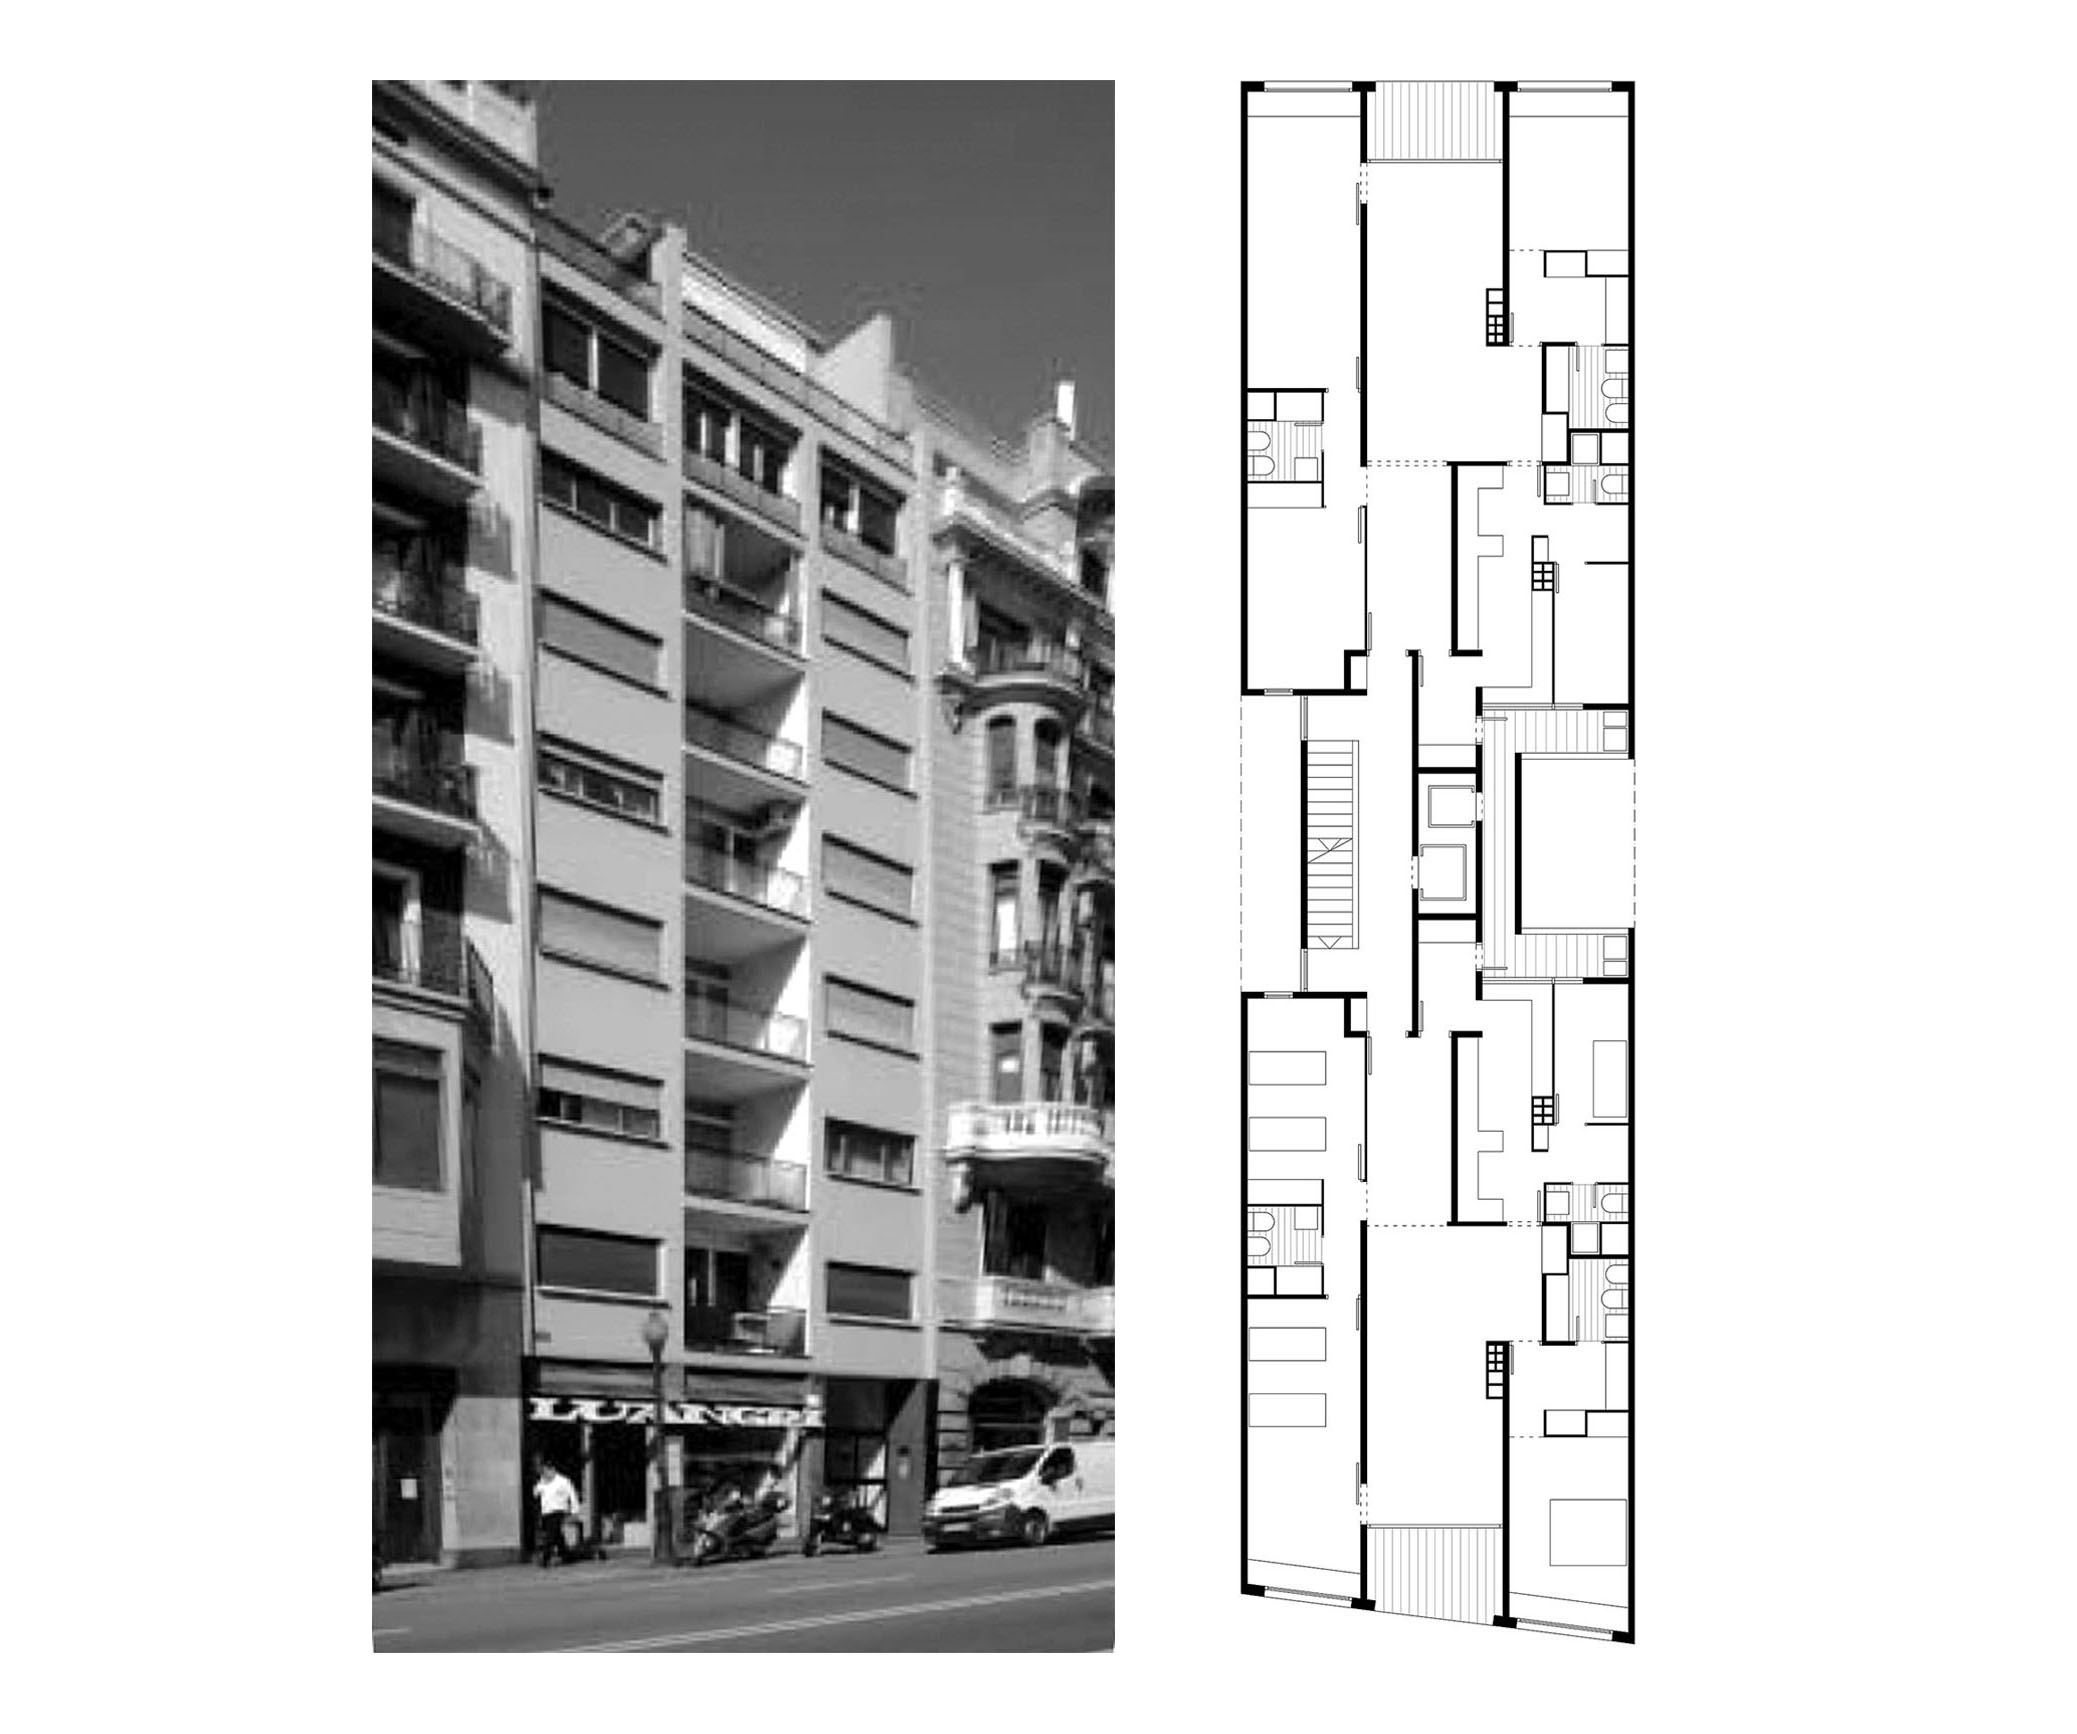 14 viviendas en la calle Balmes. Barcelona, 1959